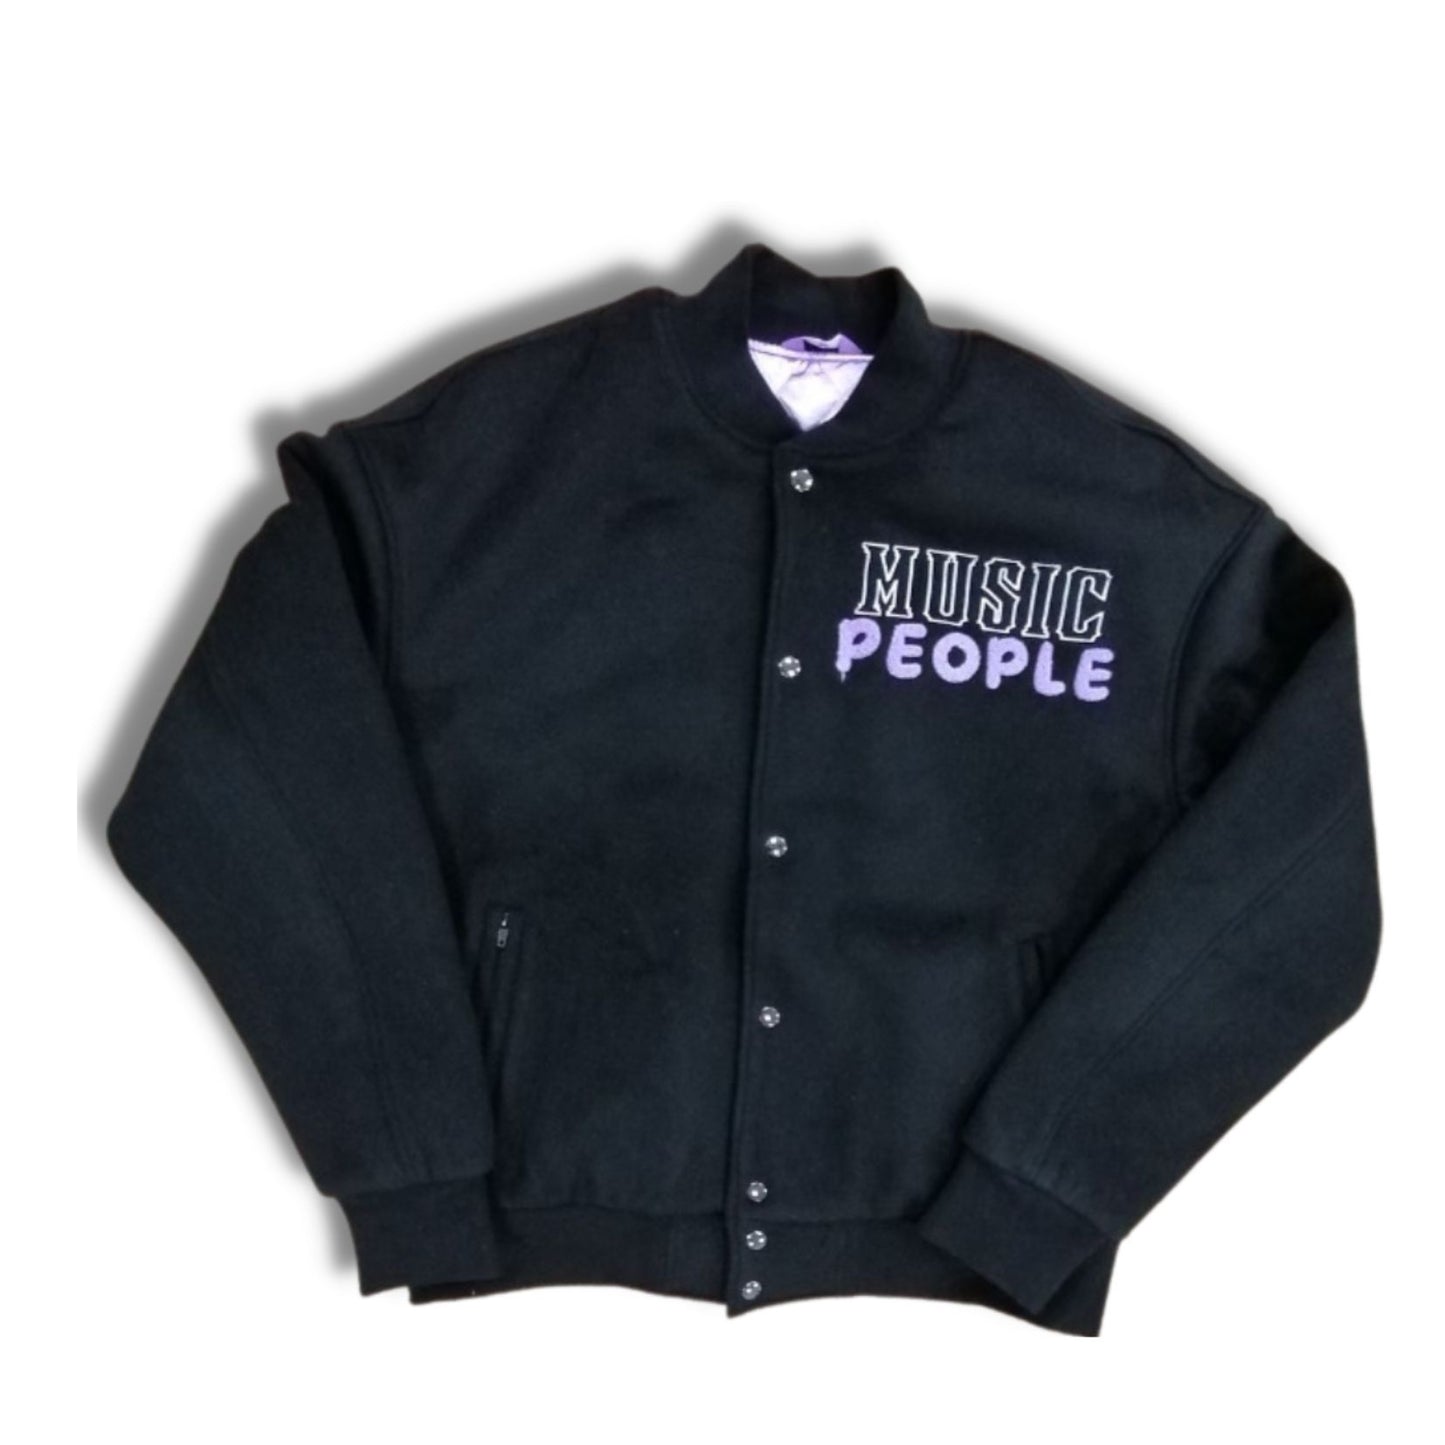 MUSIC PEOPLE Letterman Jacket [black]